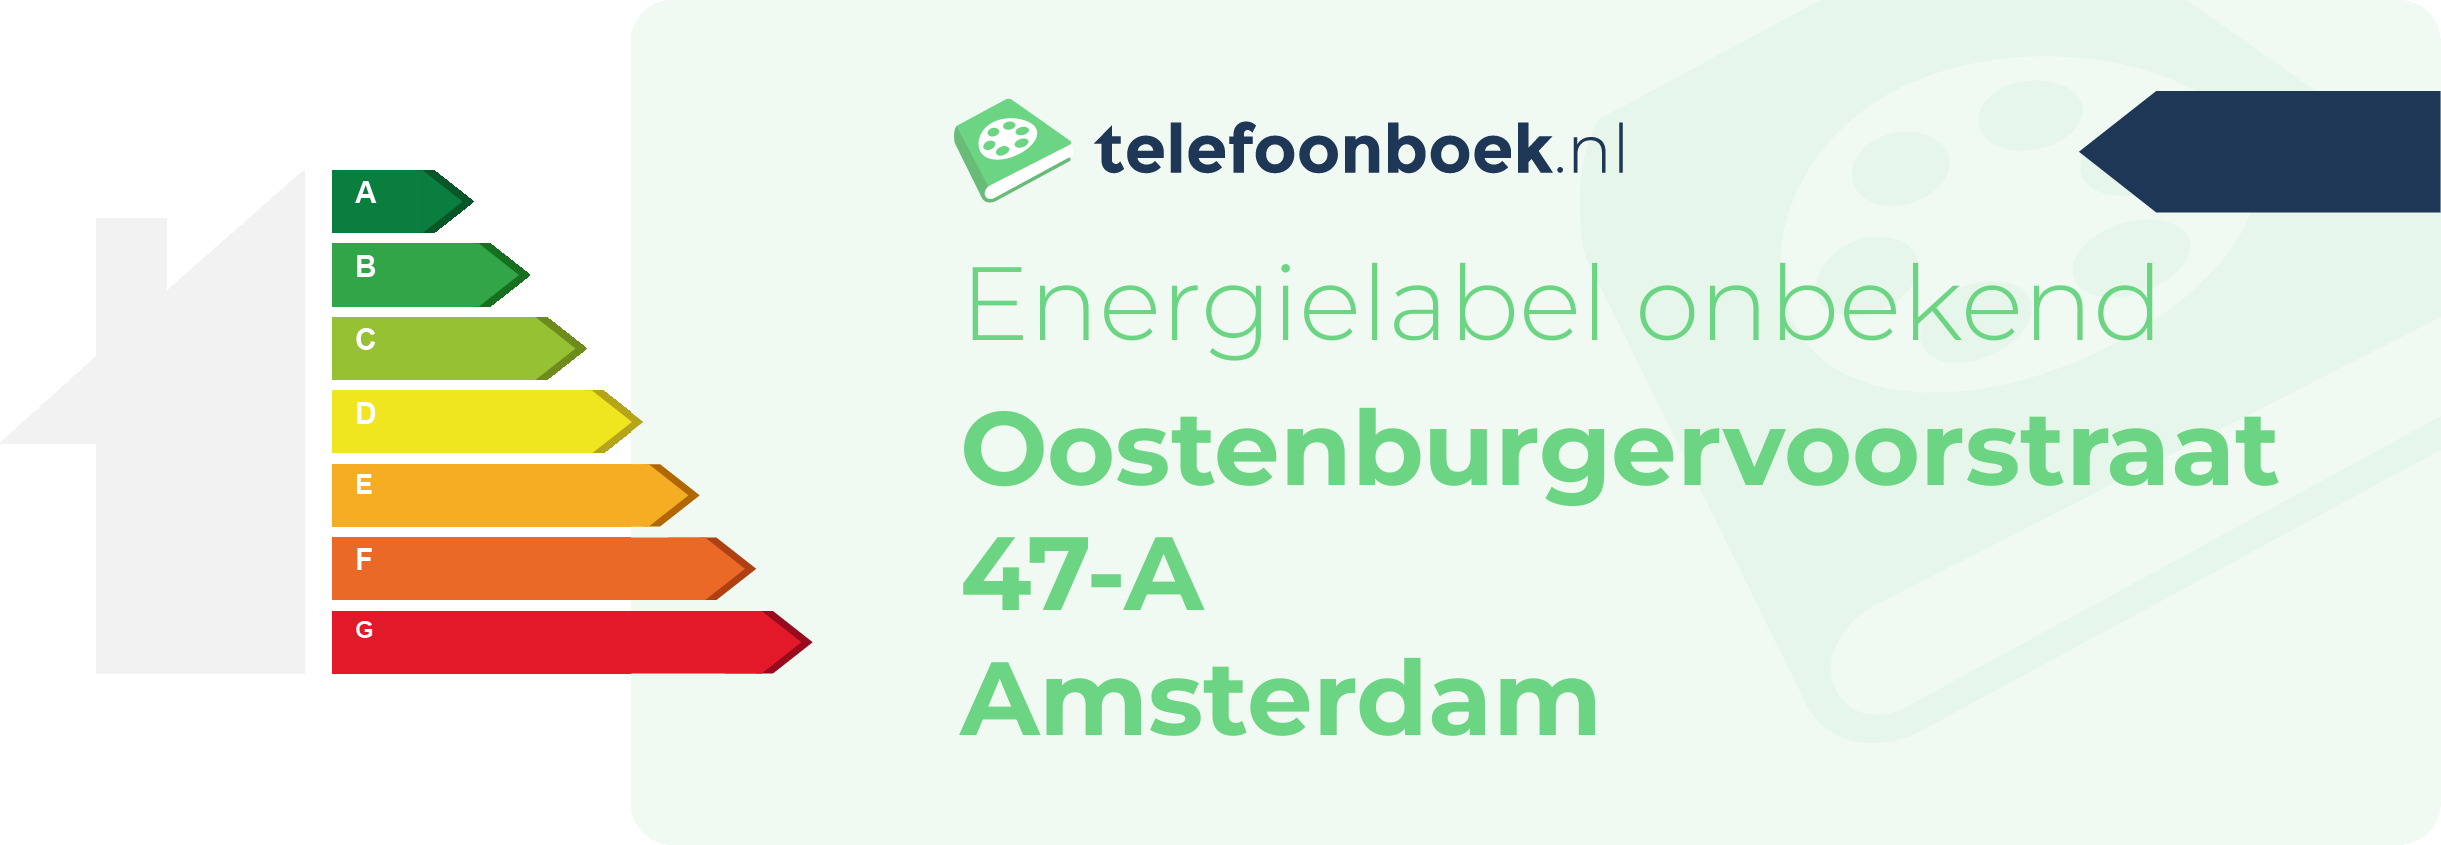 Energielabel Oostenburgervoorstraat 47-A Amsterdam